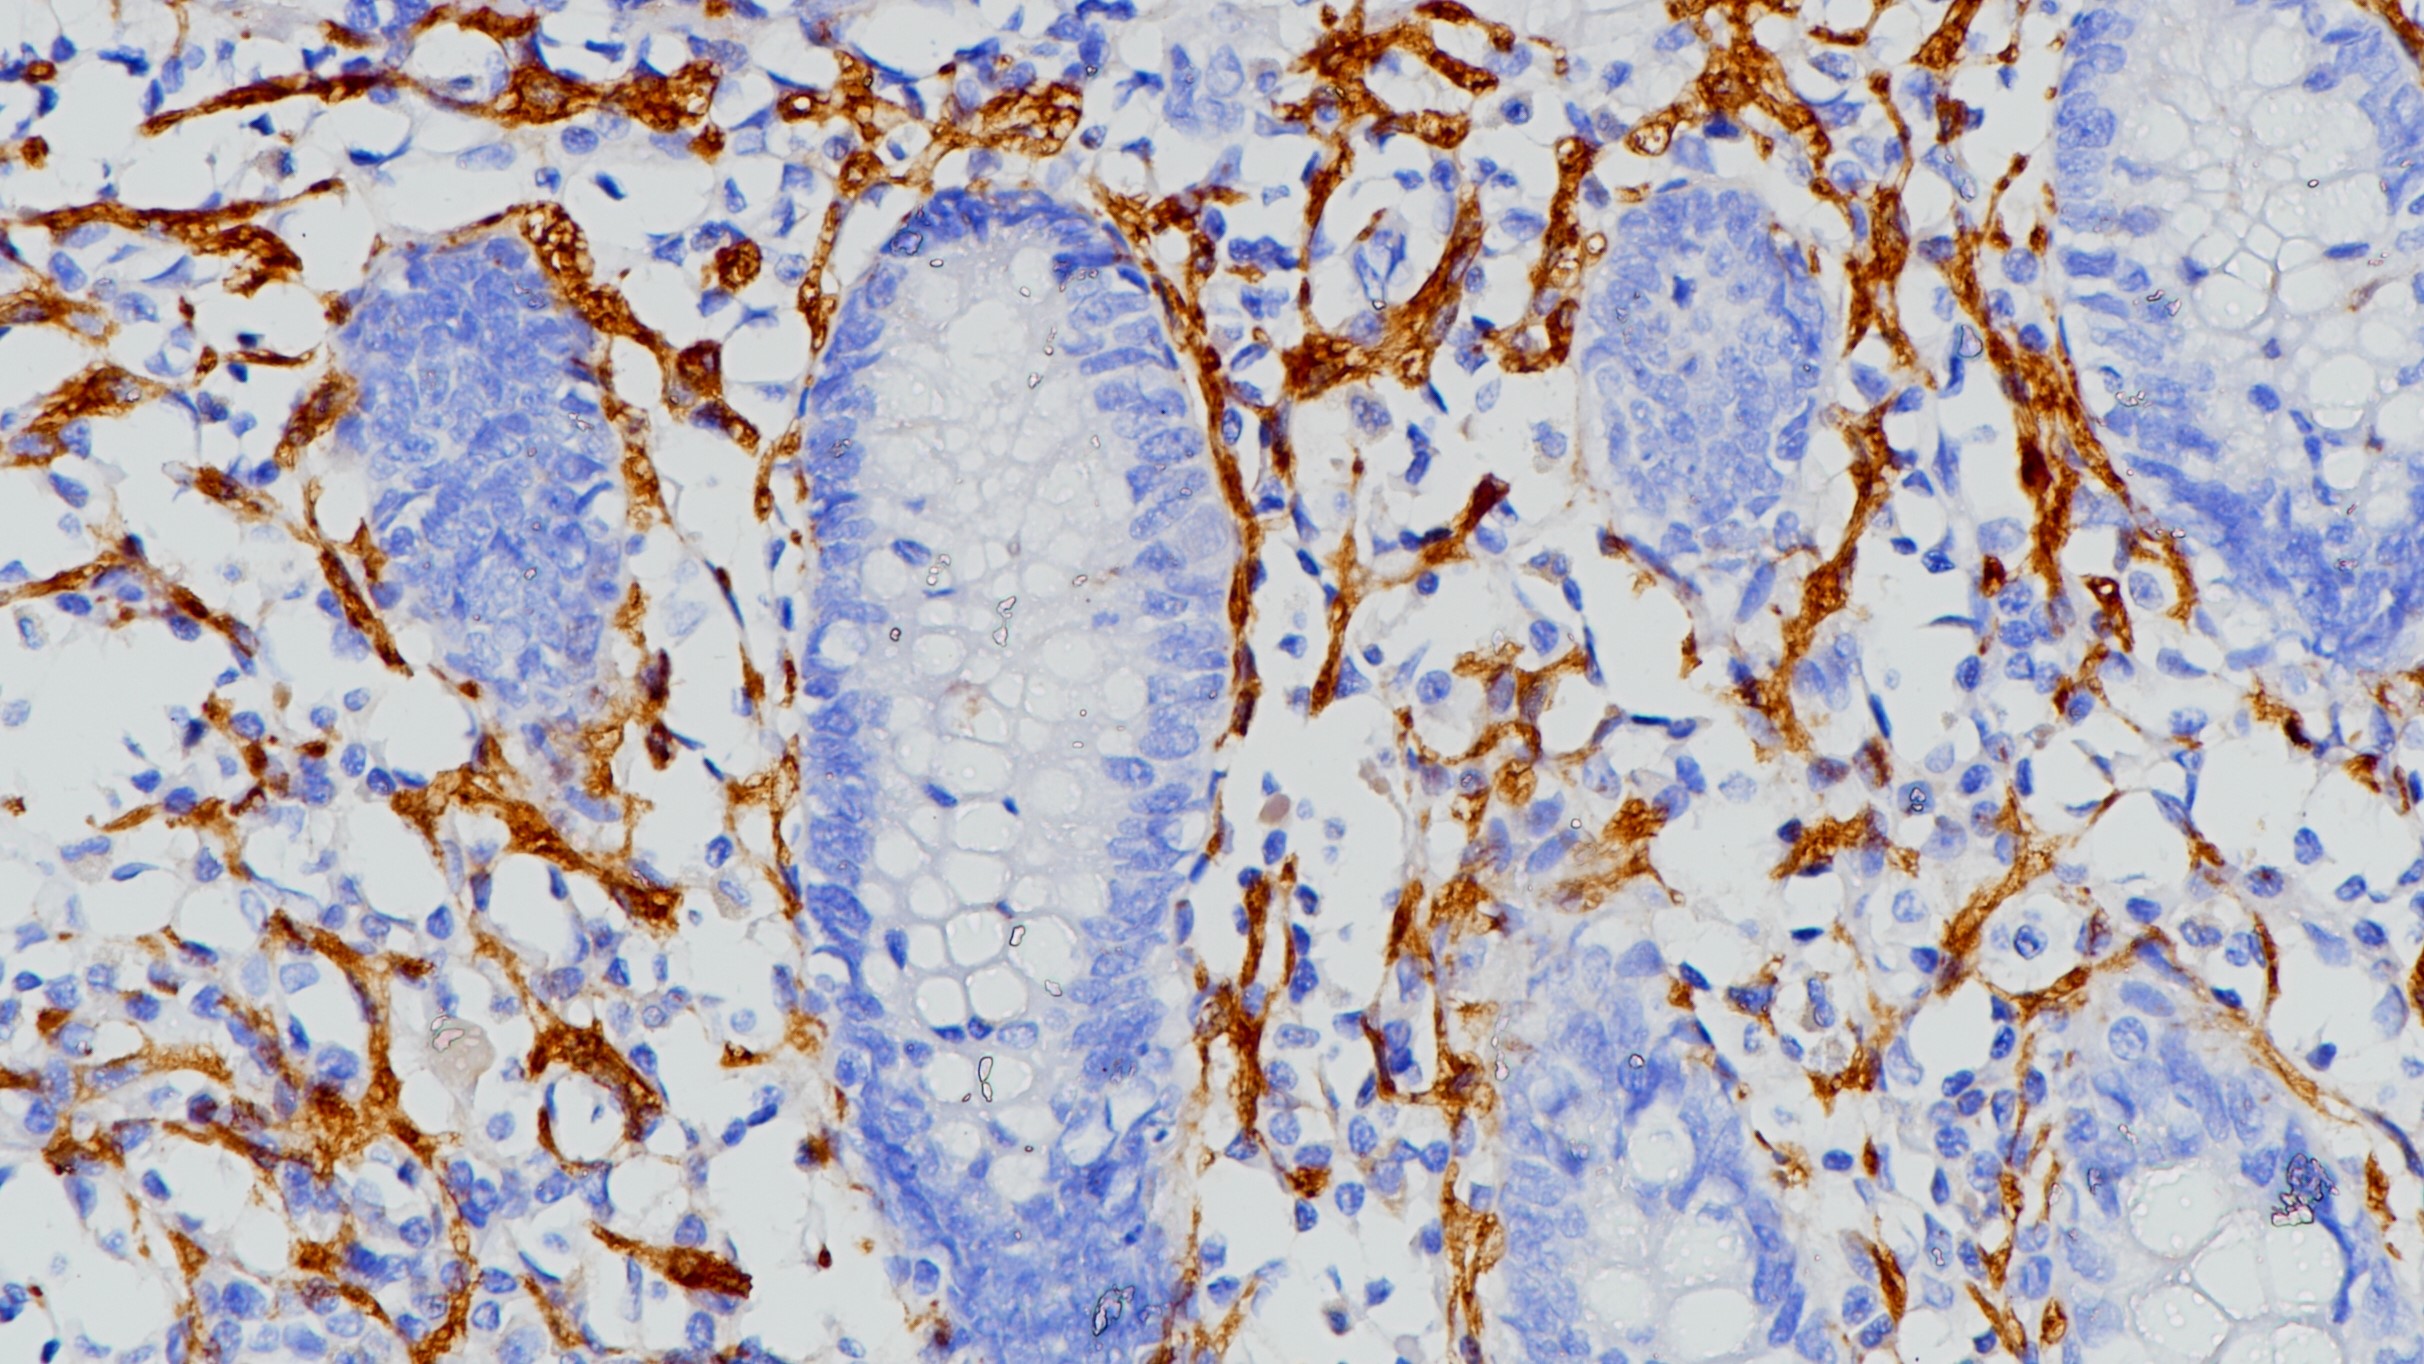 阑尾CD56(123C3.D5)染色